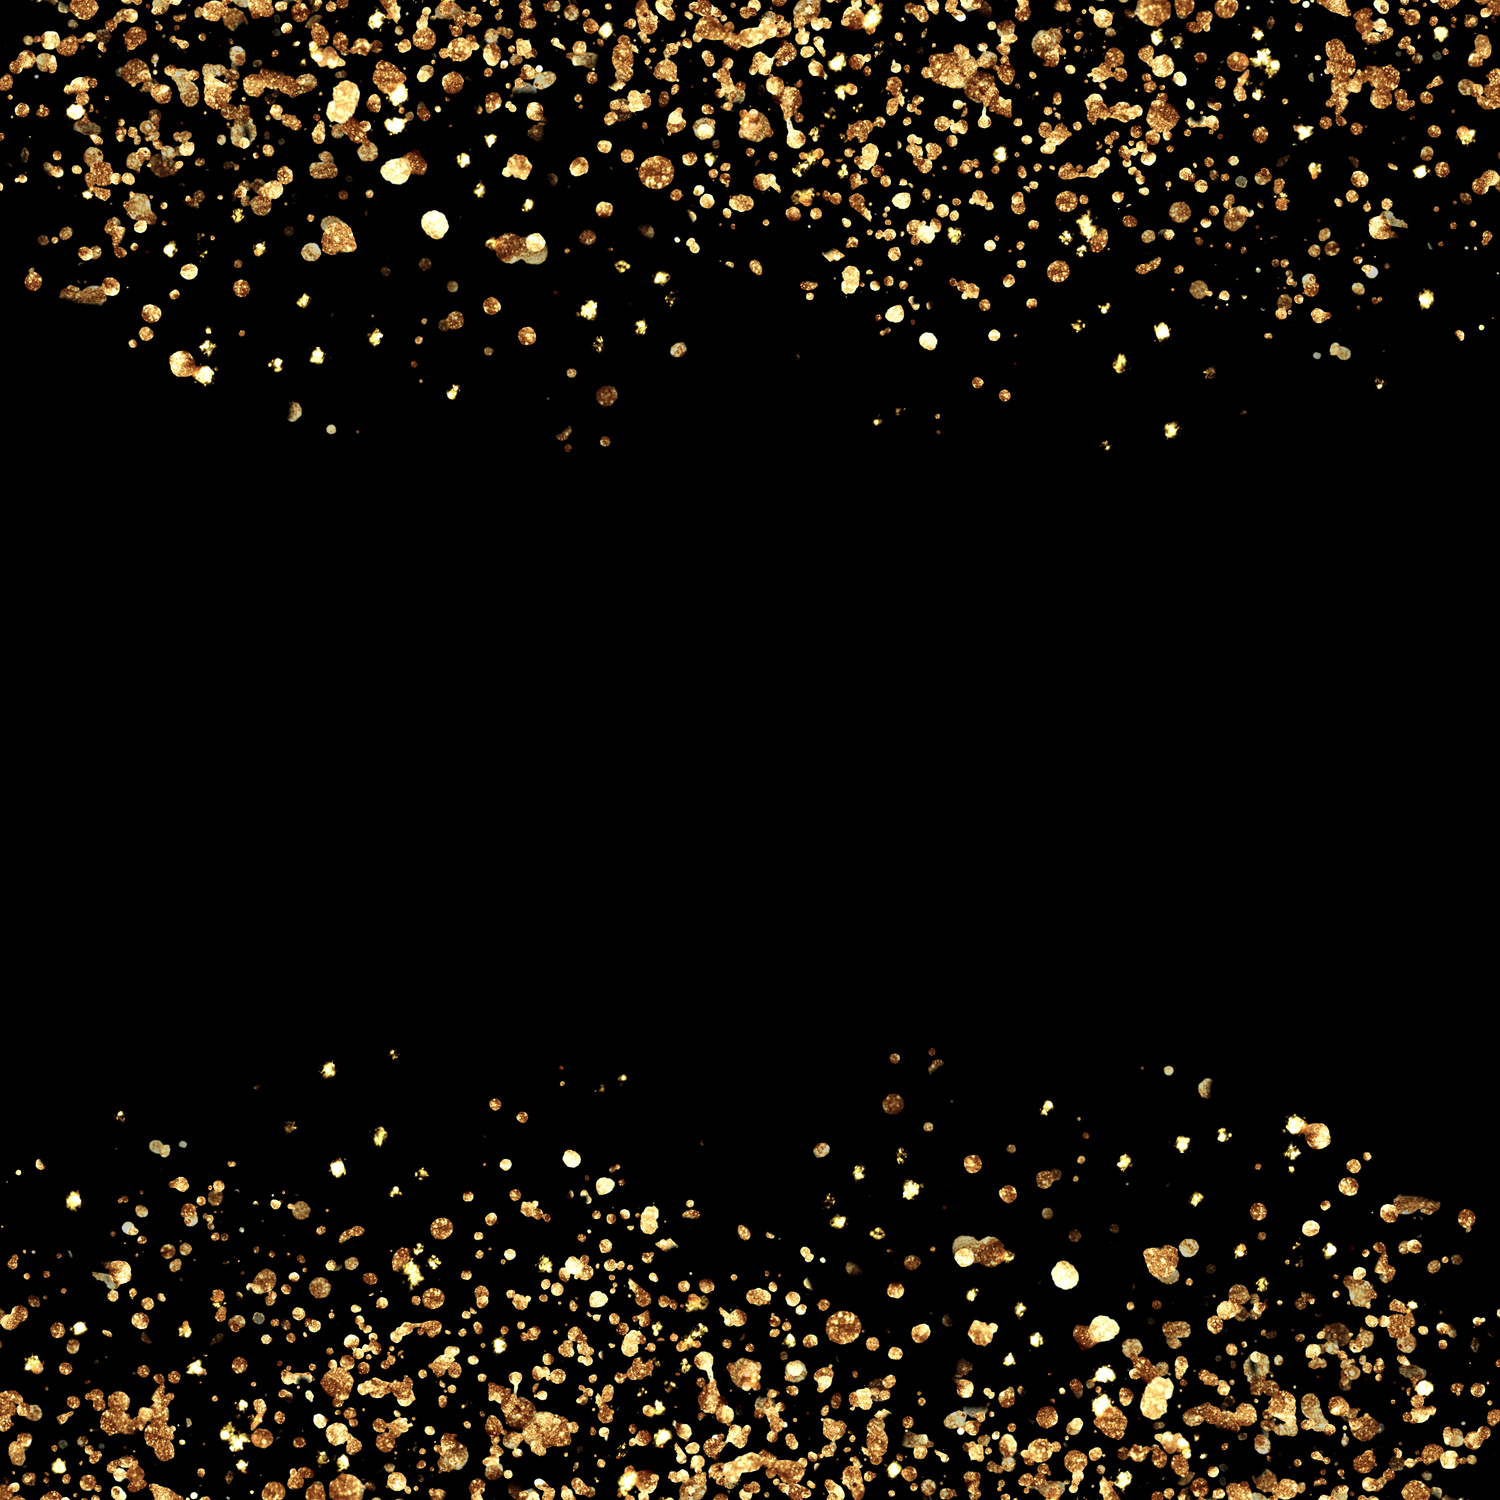 Gold Glitter Confetti Borders on Black Background